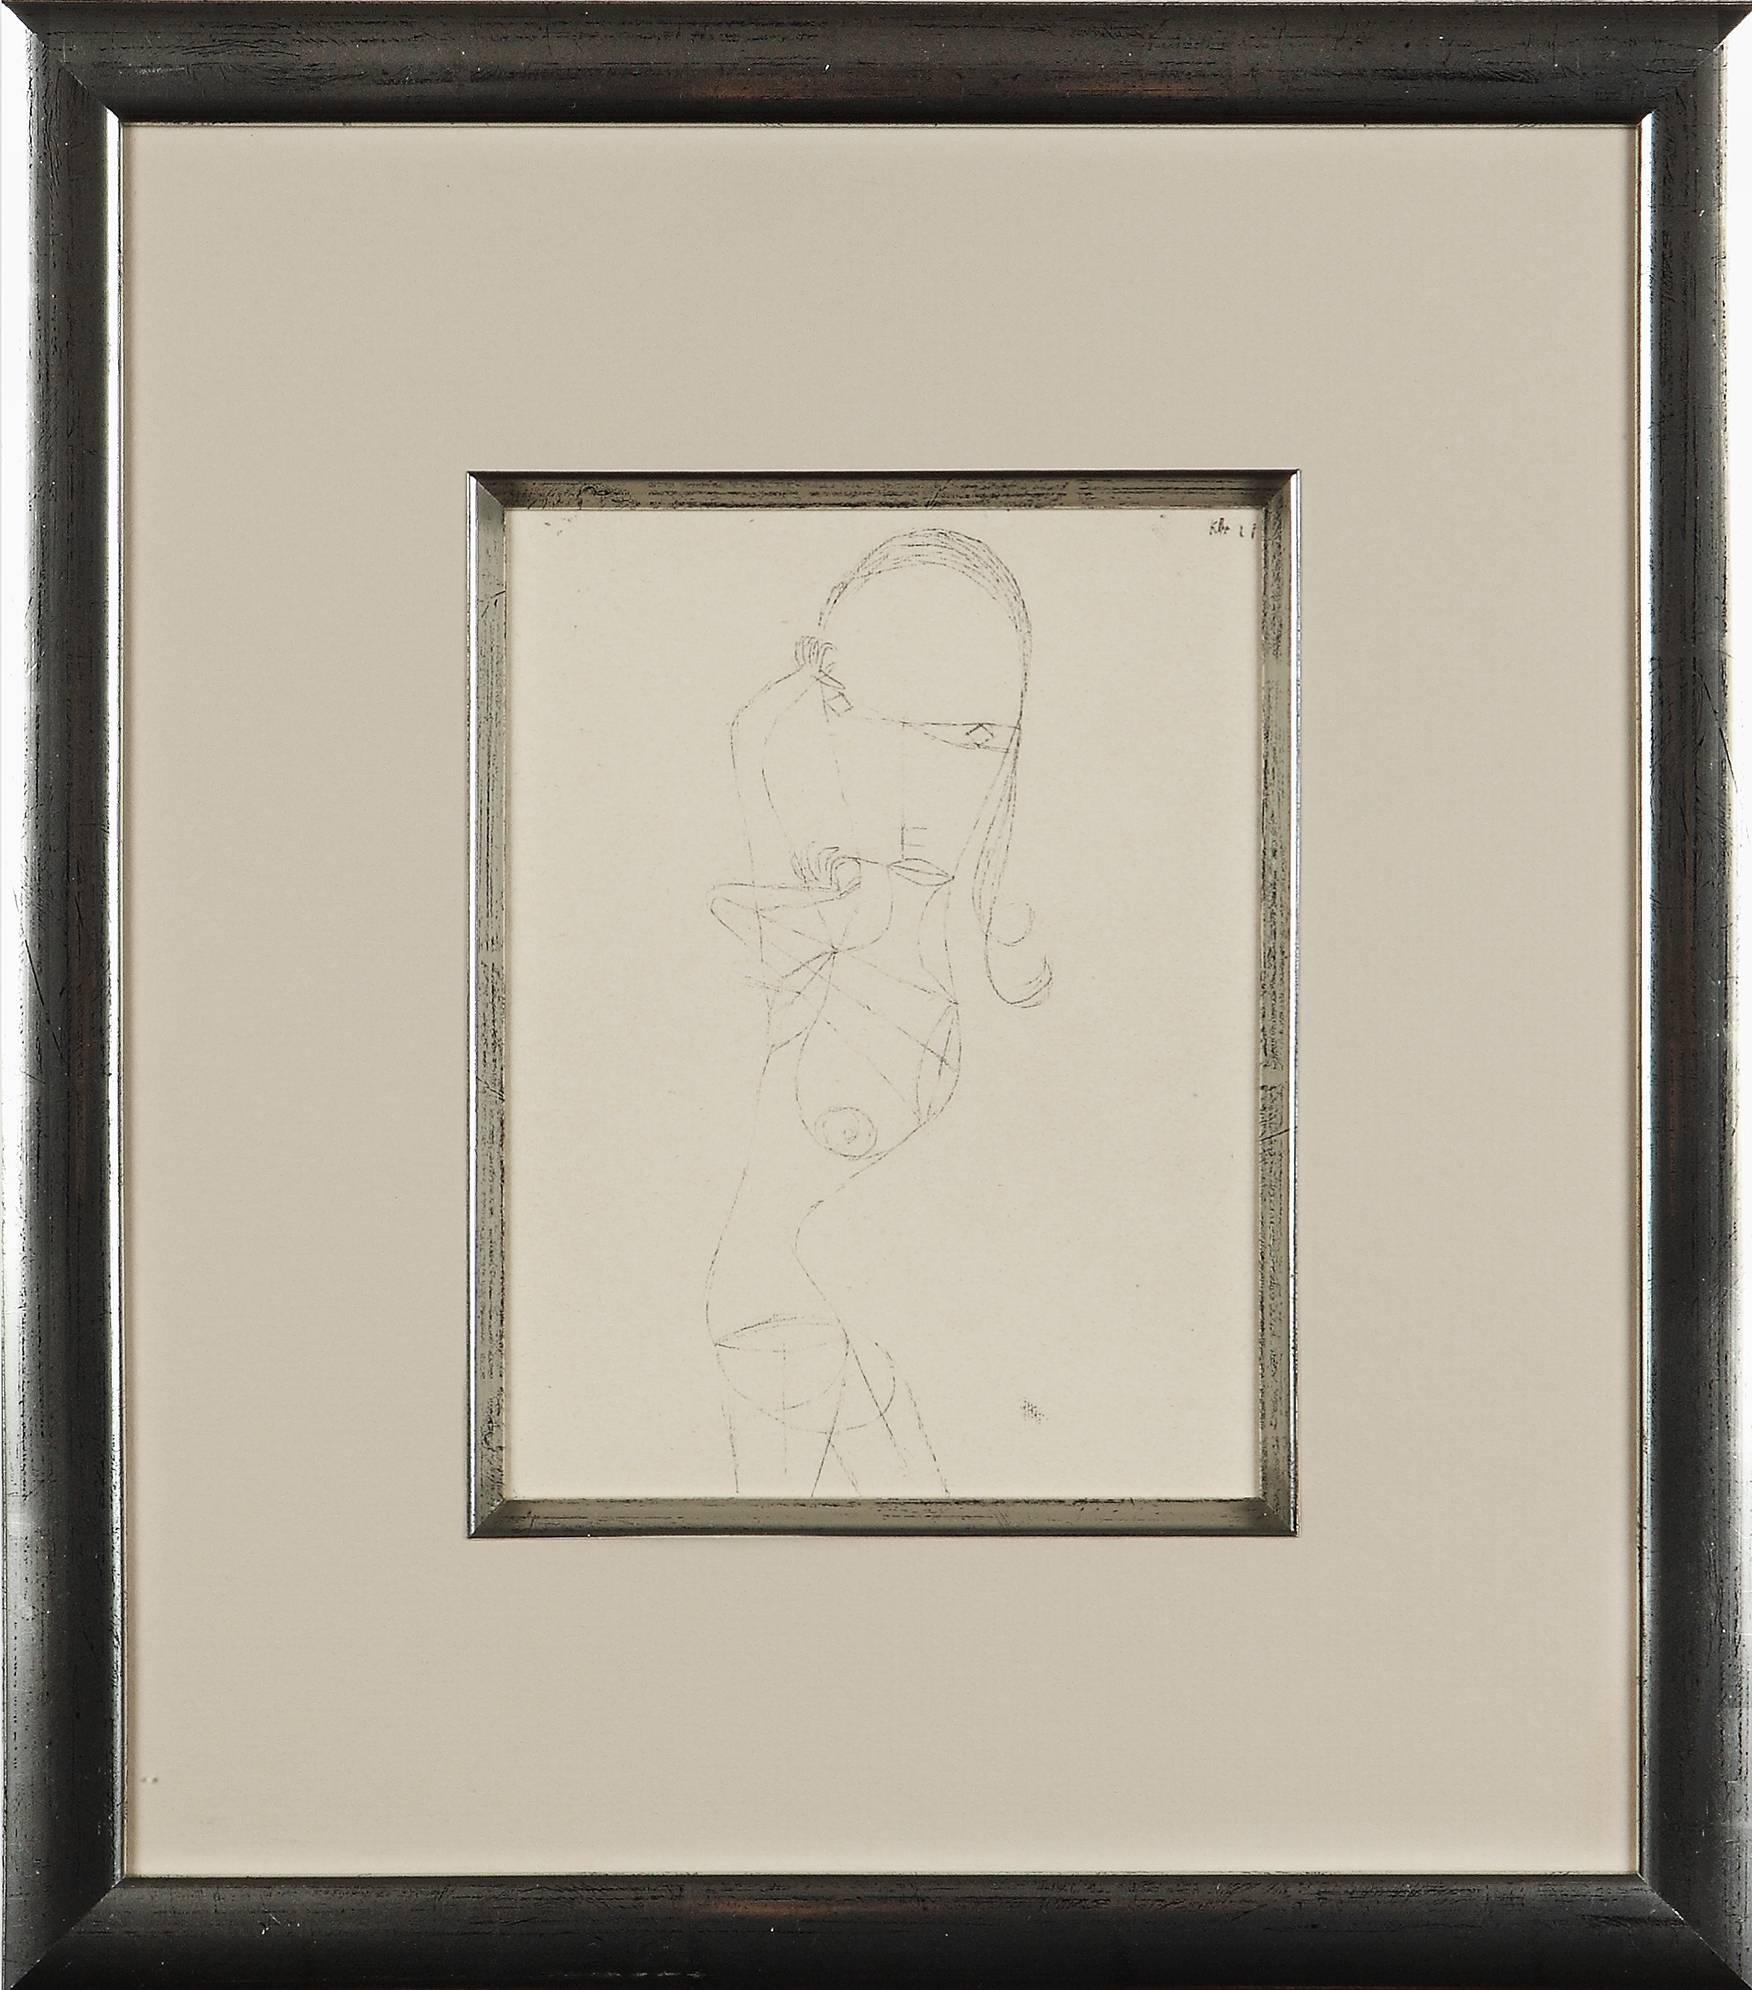 (after) Paul Klee Figurative Print - Paul Klee Etching "Nackte Frau"